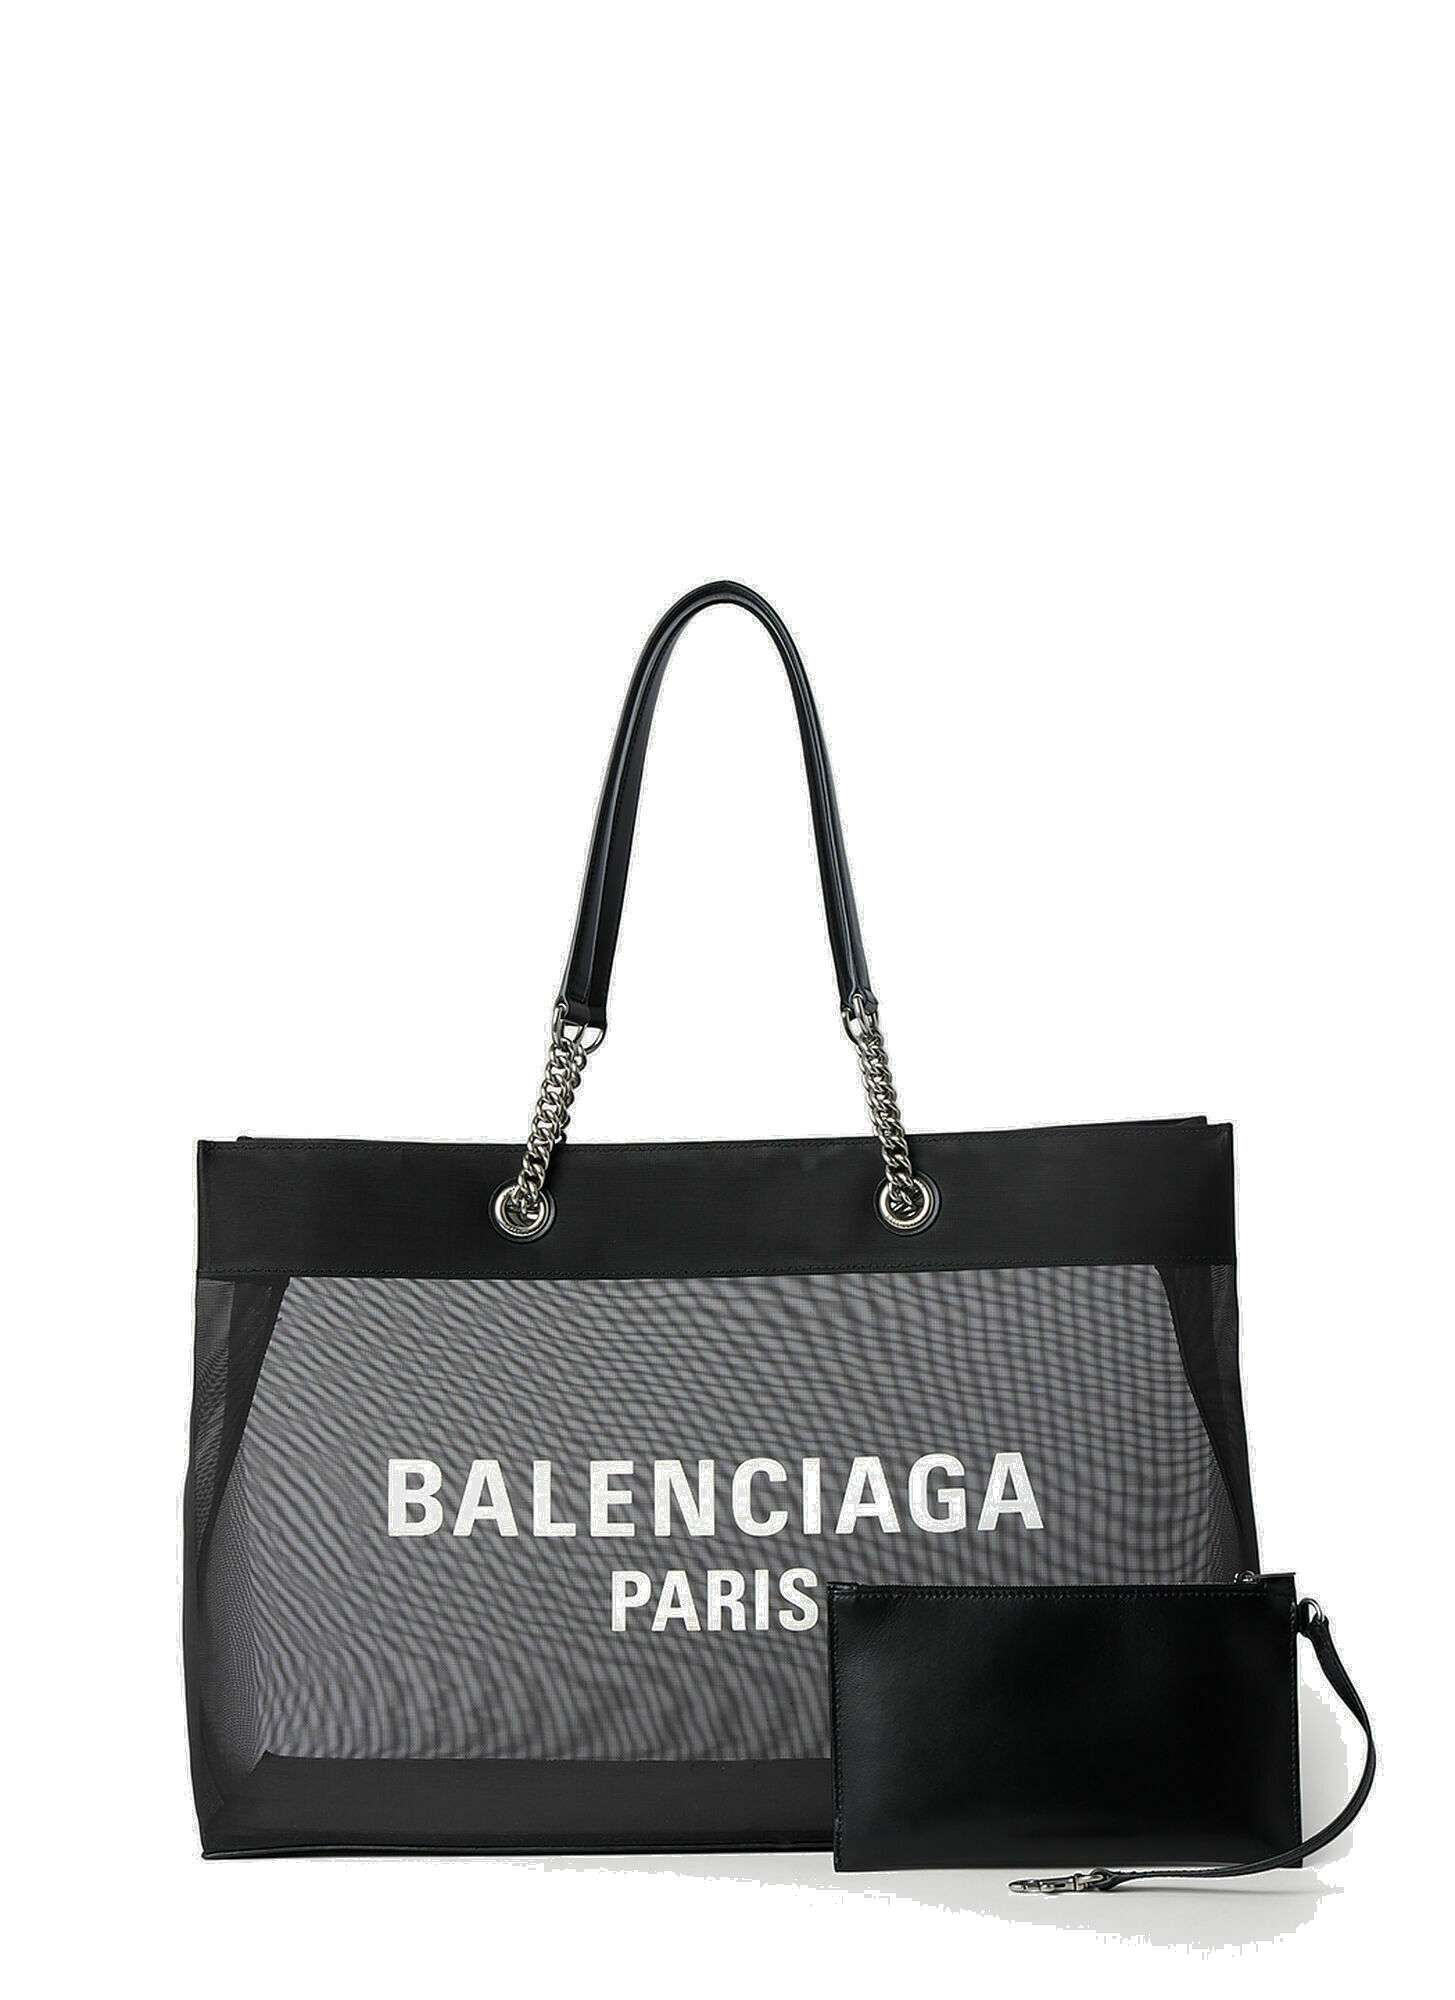 Balenciaga - Duty Free Tote Bag in Black Balenciaga